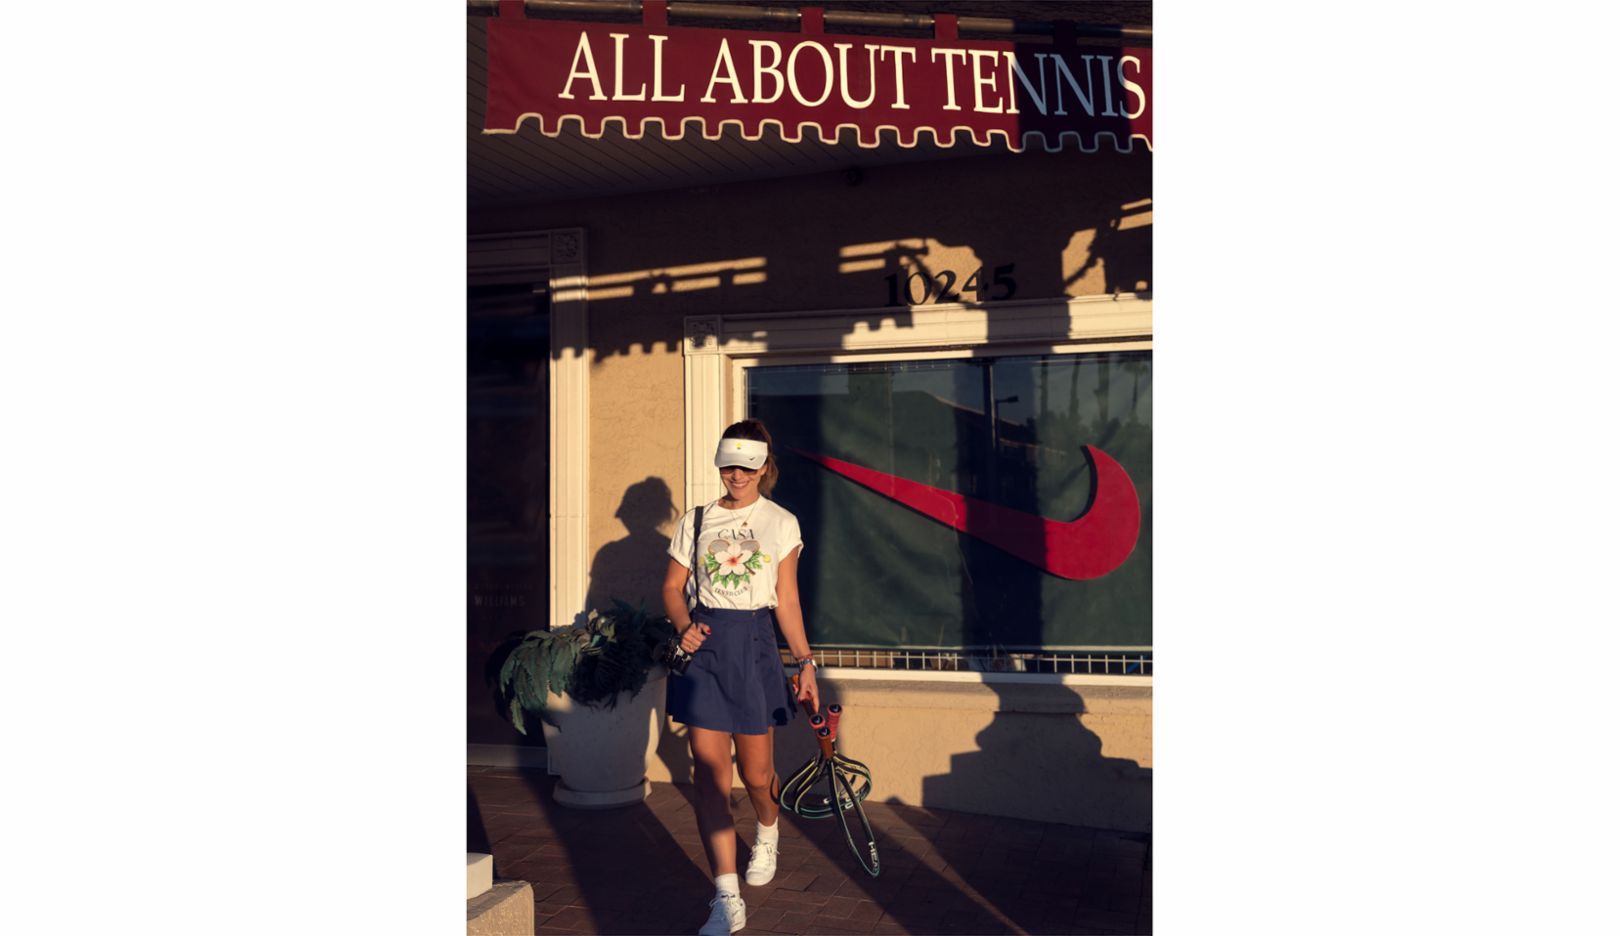 拉德卡·莱特梅里茨 (Radka Leitmeritz) 站在美国亚利桑那州斯科茨代尔她钟爱的网球店前。“我很爱在那里到处看。像是他们在帮球拍穿线的时候。”她的一身行头，通常是在网上找到的，而且她偏爱复古。身为专业摄影师的她发现，比起现在，20 世纪 80 与 90 年代的女子网球选手，更爱在服装上强烈展现个人特质，这也是她热爱收集这期间网球裙的原因。 